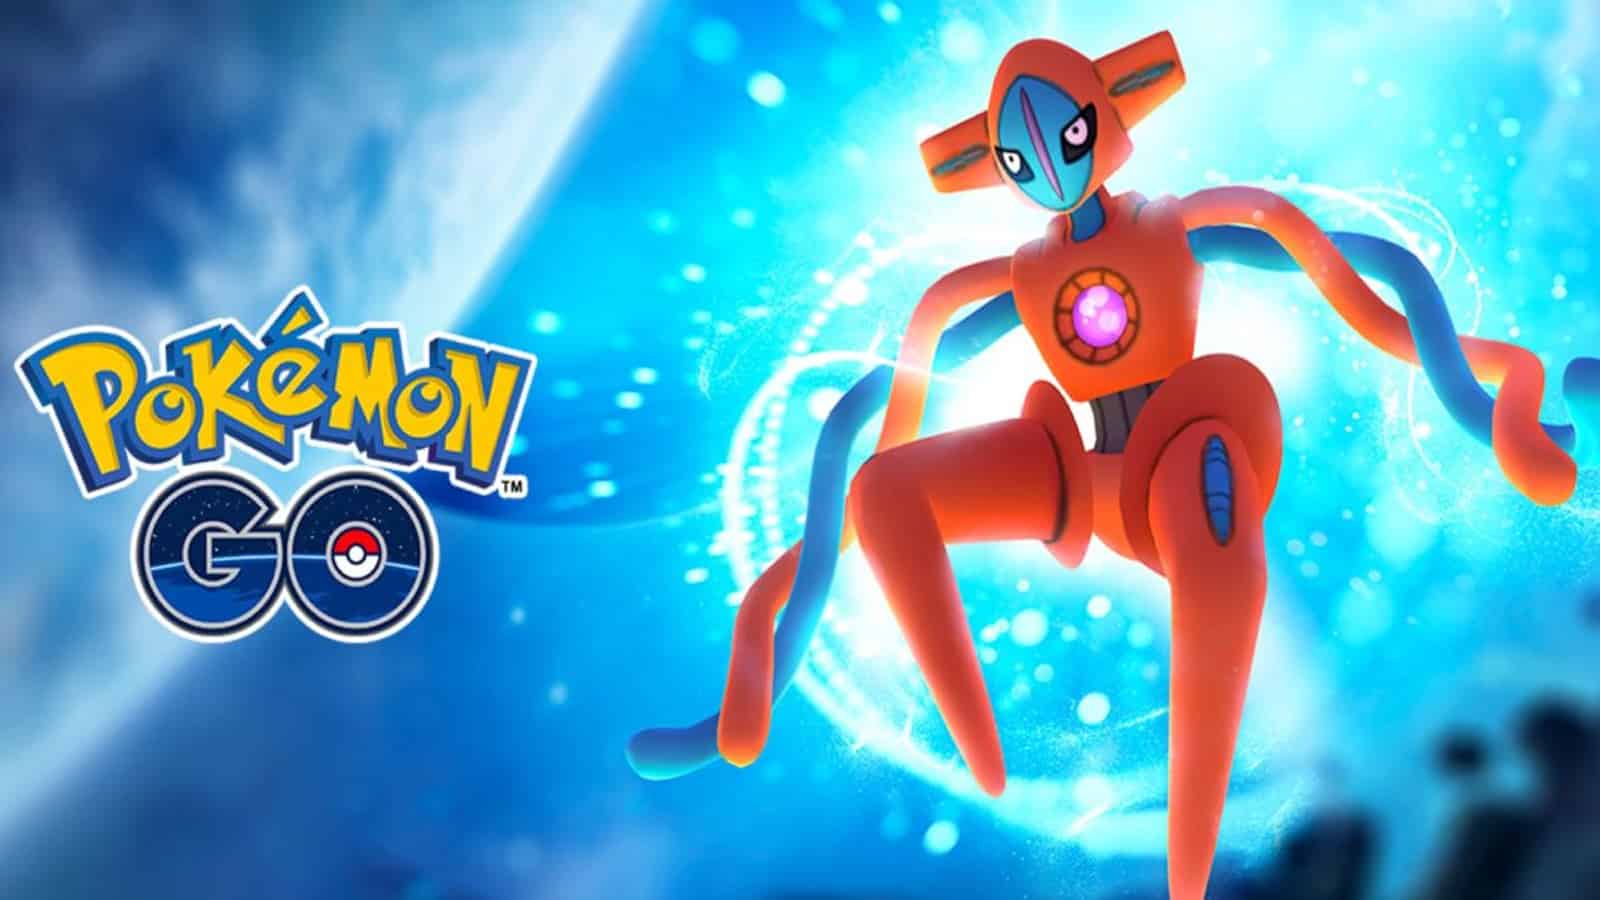 deoxys Guide Raid Pokémon Go